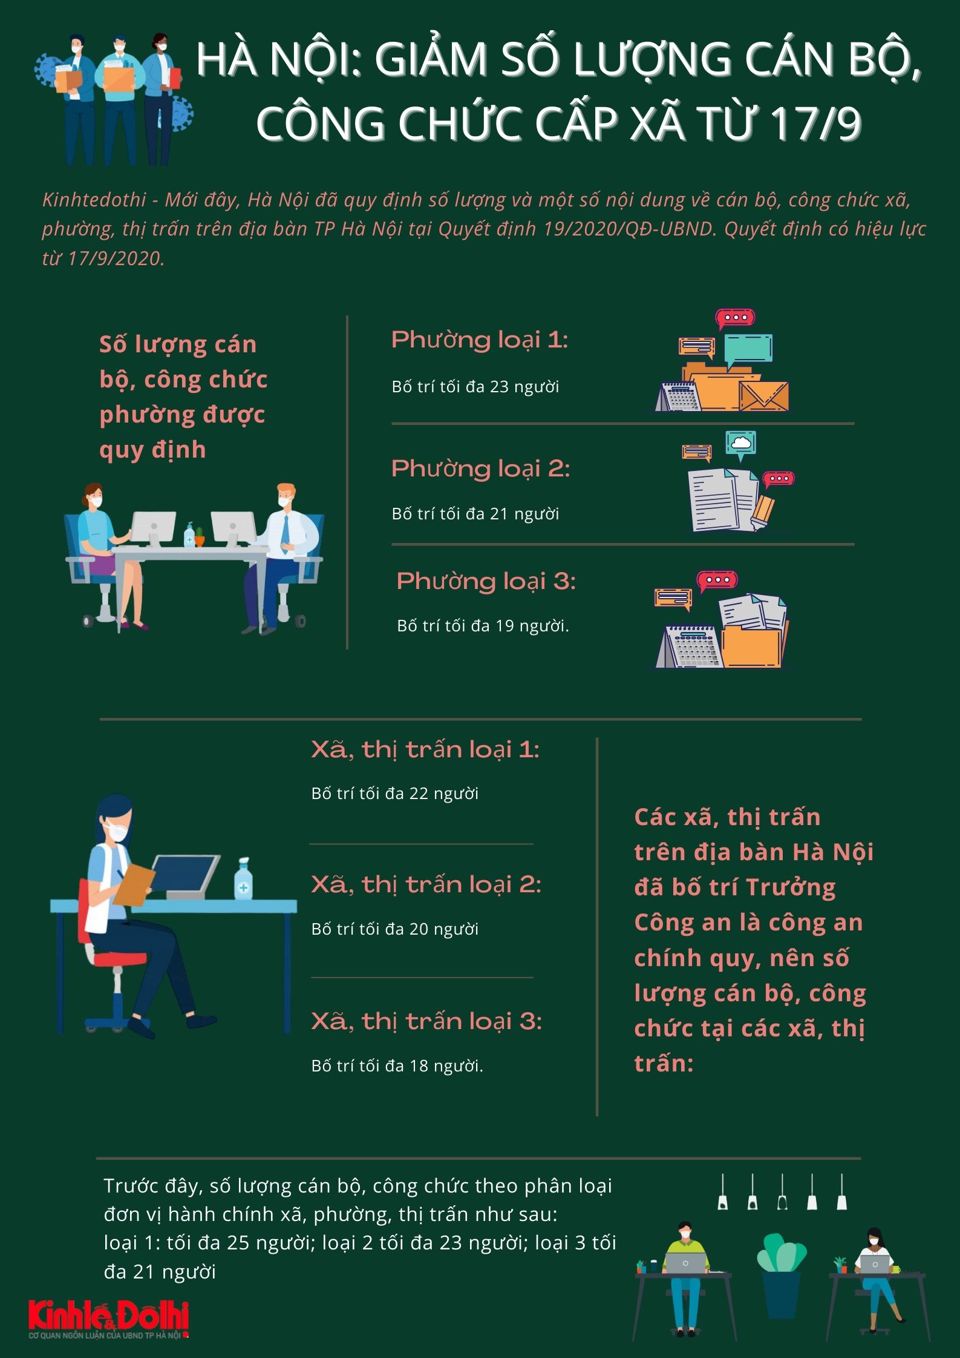 [Infographic] Hà Nội: Giảm số lượng cán bộ, công chức cấp xã từ ngày 17/9 - Ảnh 1